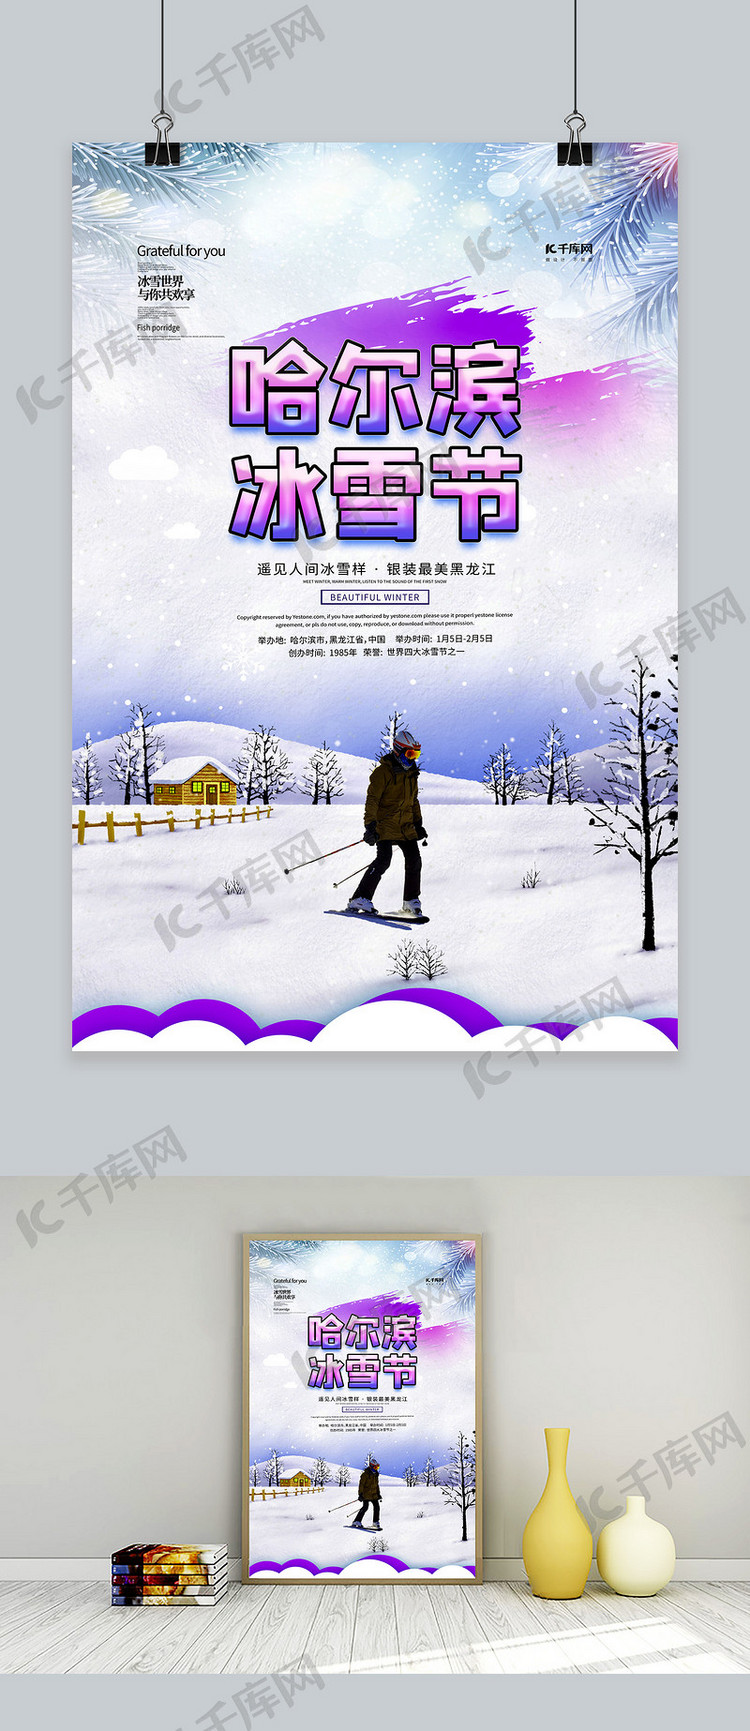 哈尔滨冰雪节紫色简约海报